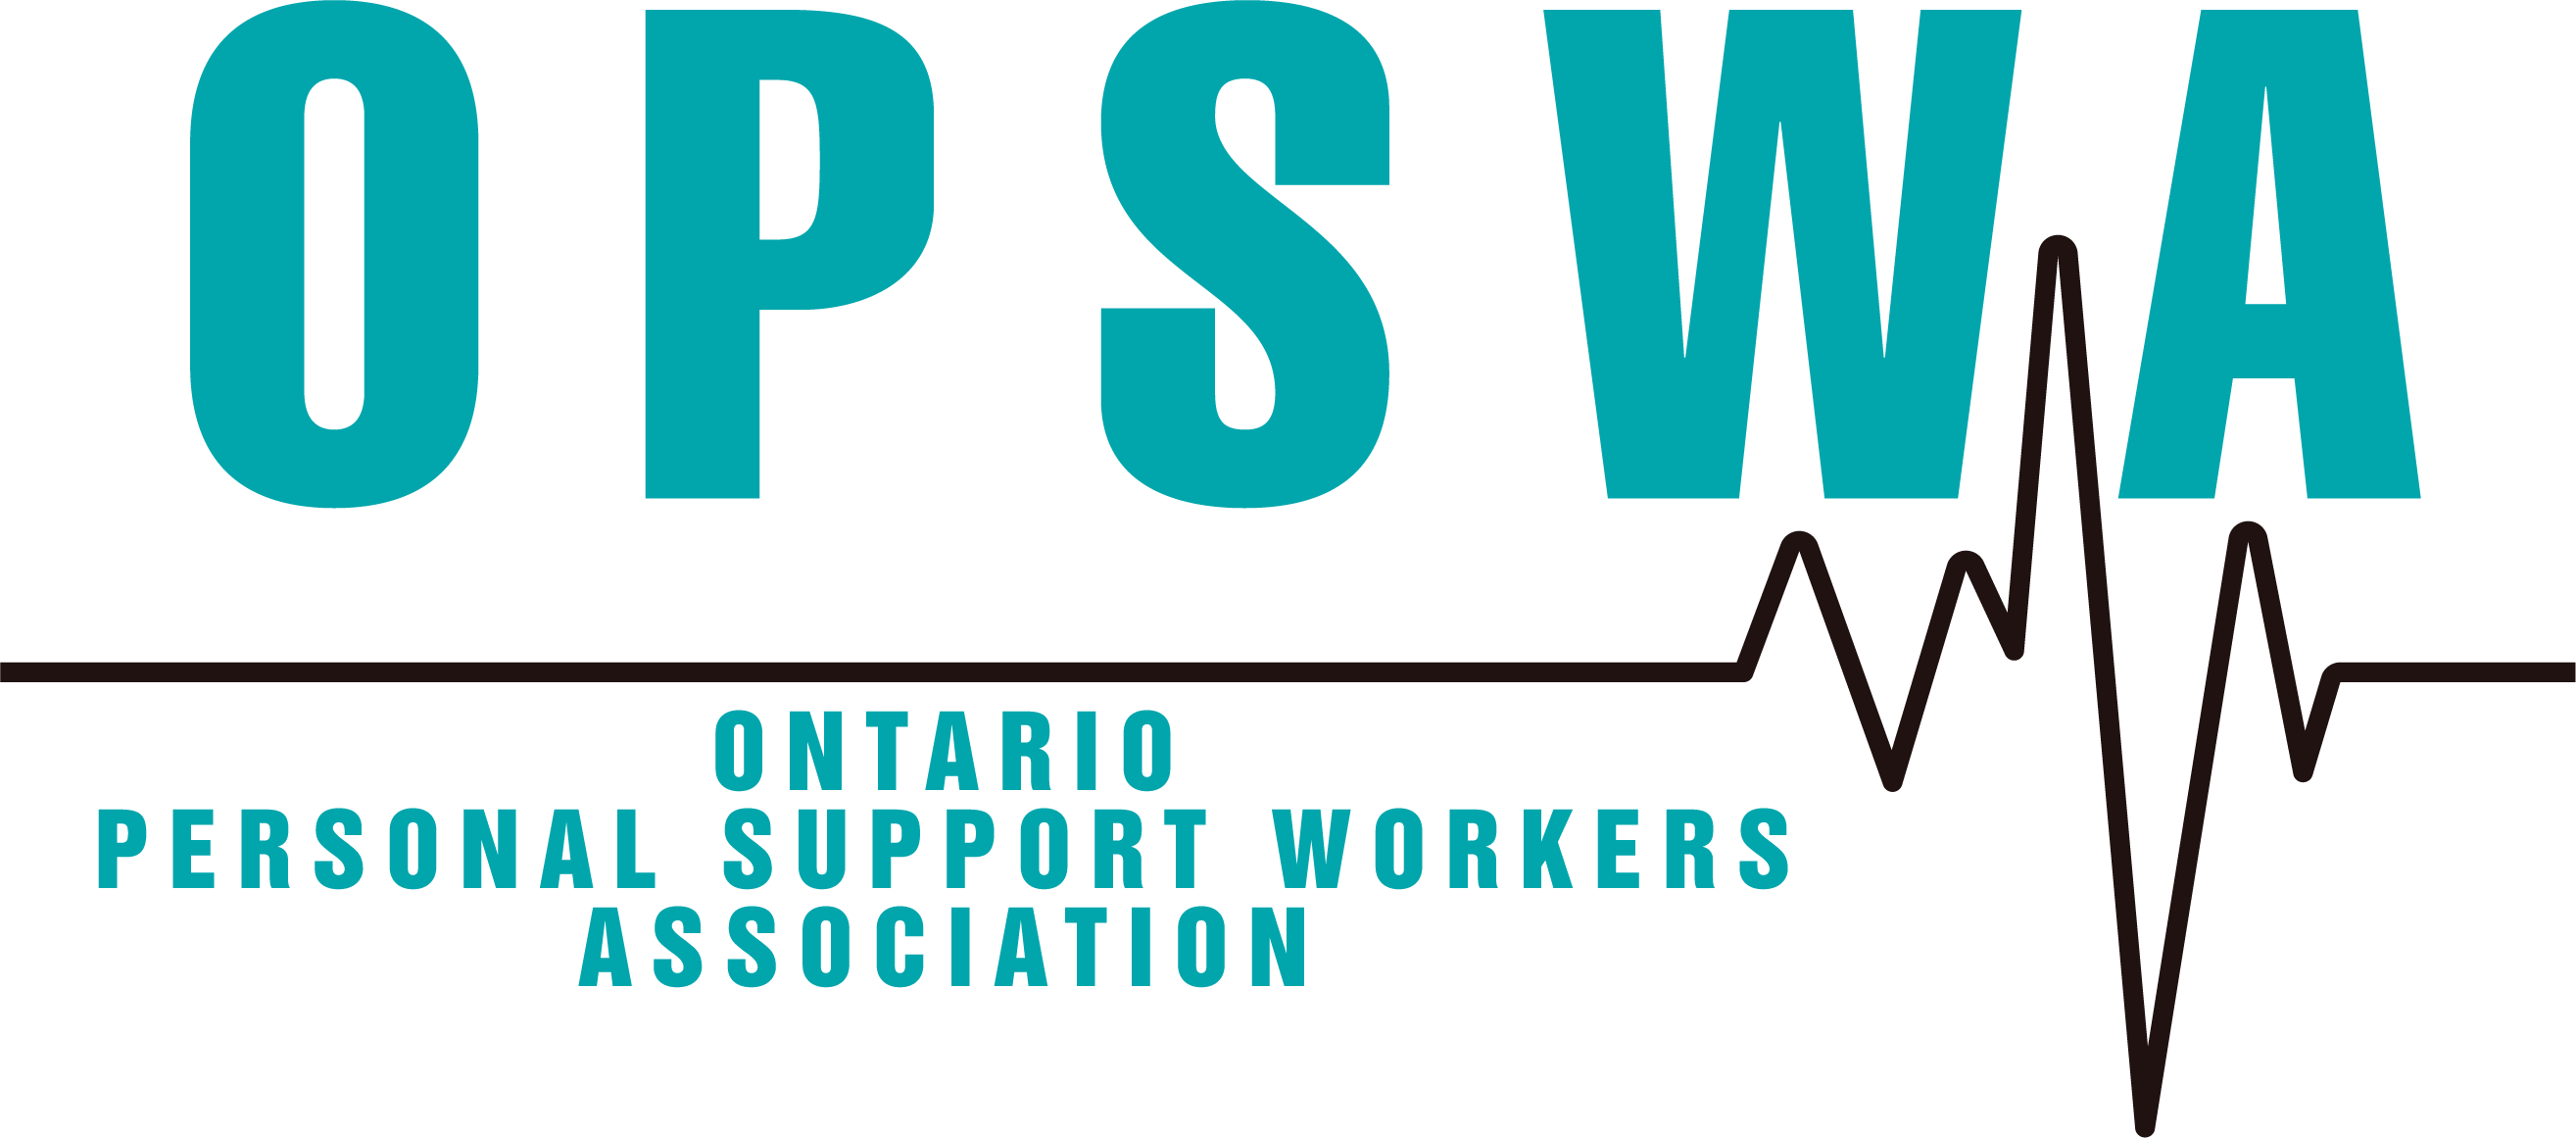 Ashley Pypka – PSW London Ontario